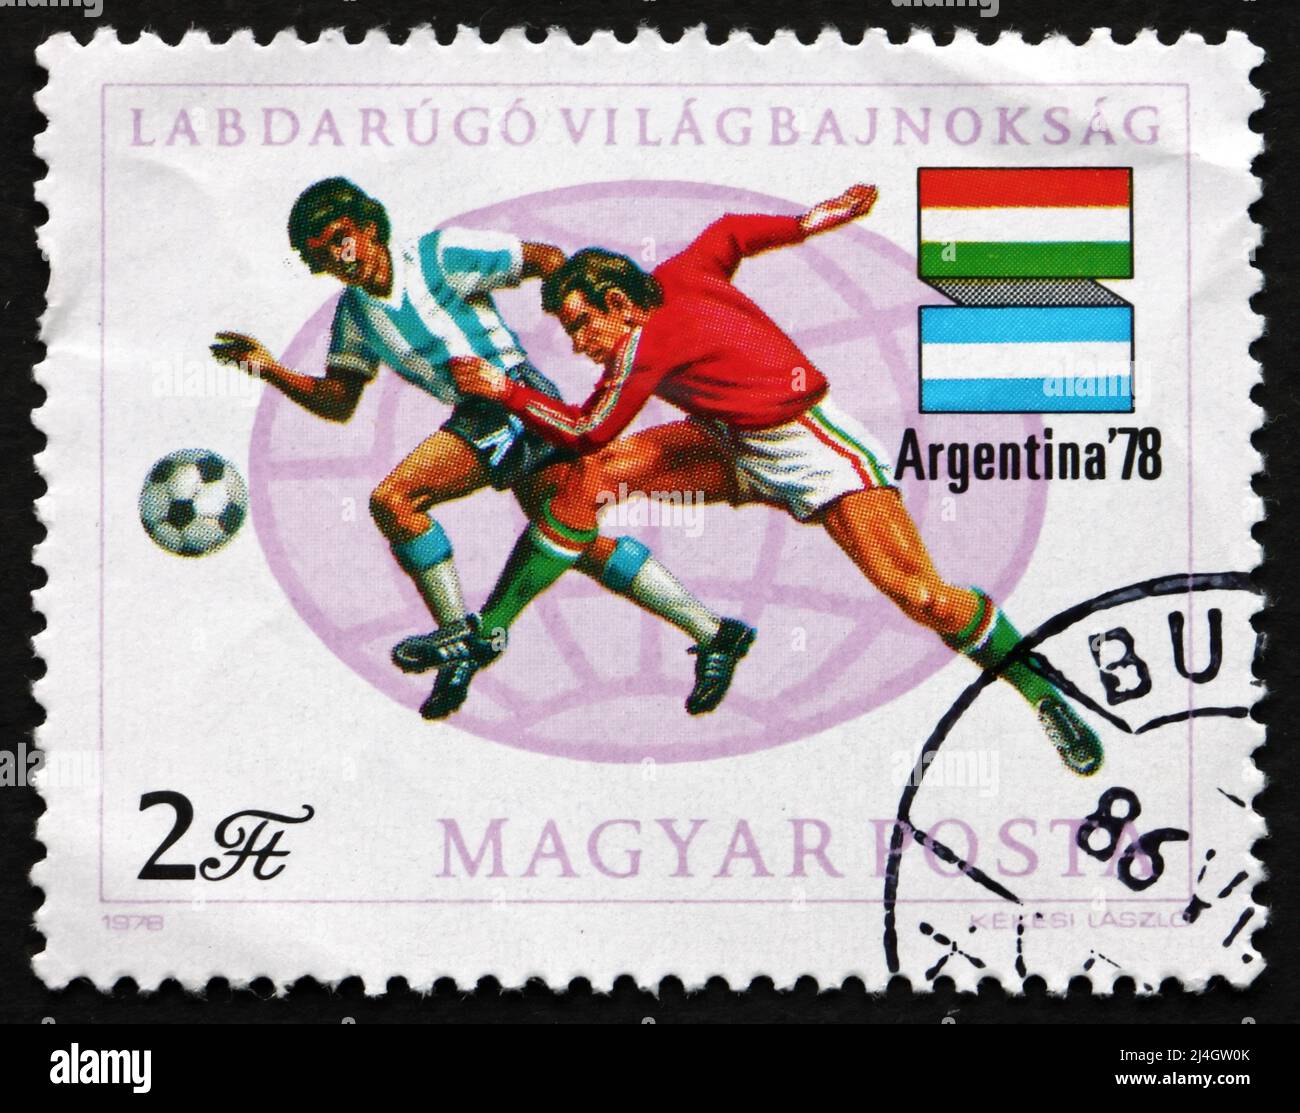 UNGHERIA - CIRCA 1978: Un timbro stampato in Ungheria mostra giocatori di calcio, bandiere di Argentina e Ungheria, Argentina 78, Coppa del mondo di calcio campione 11th Foto Stock